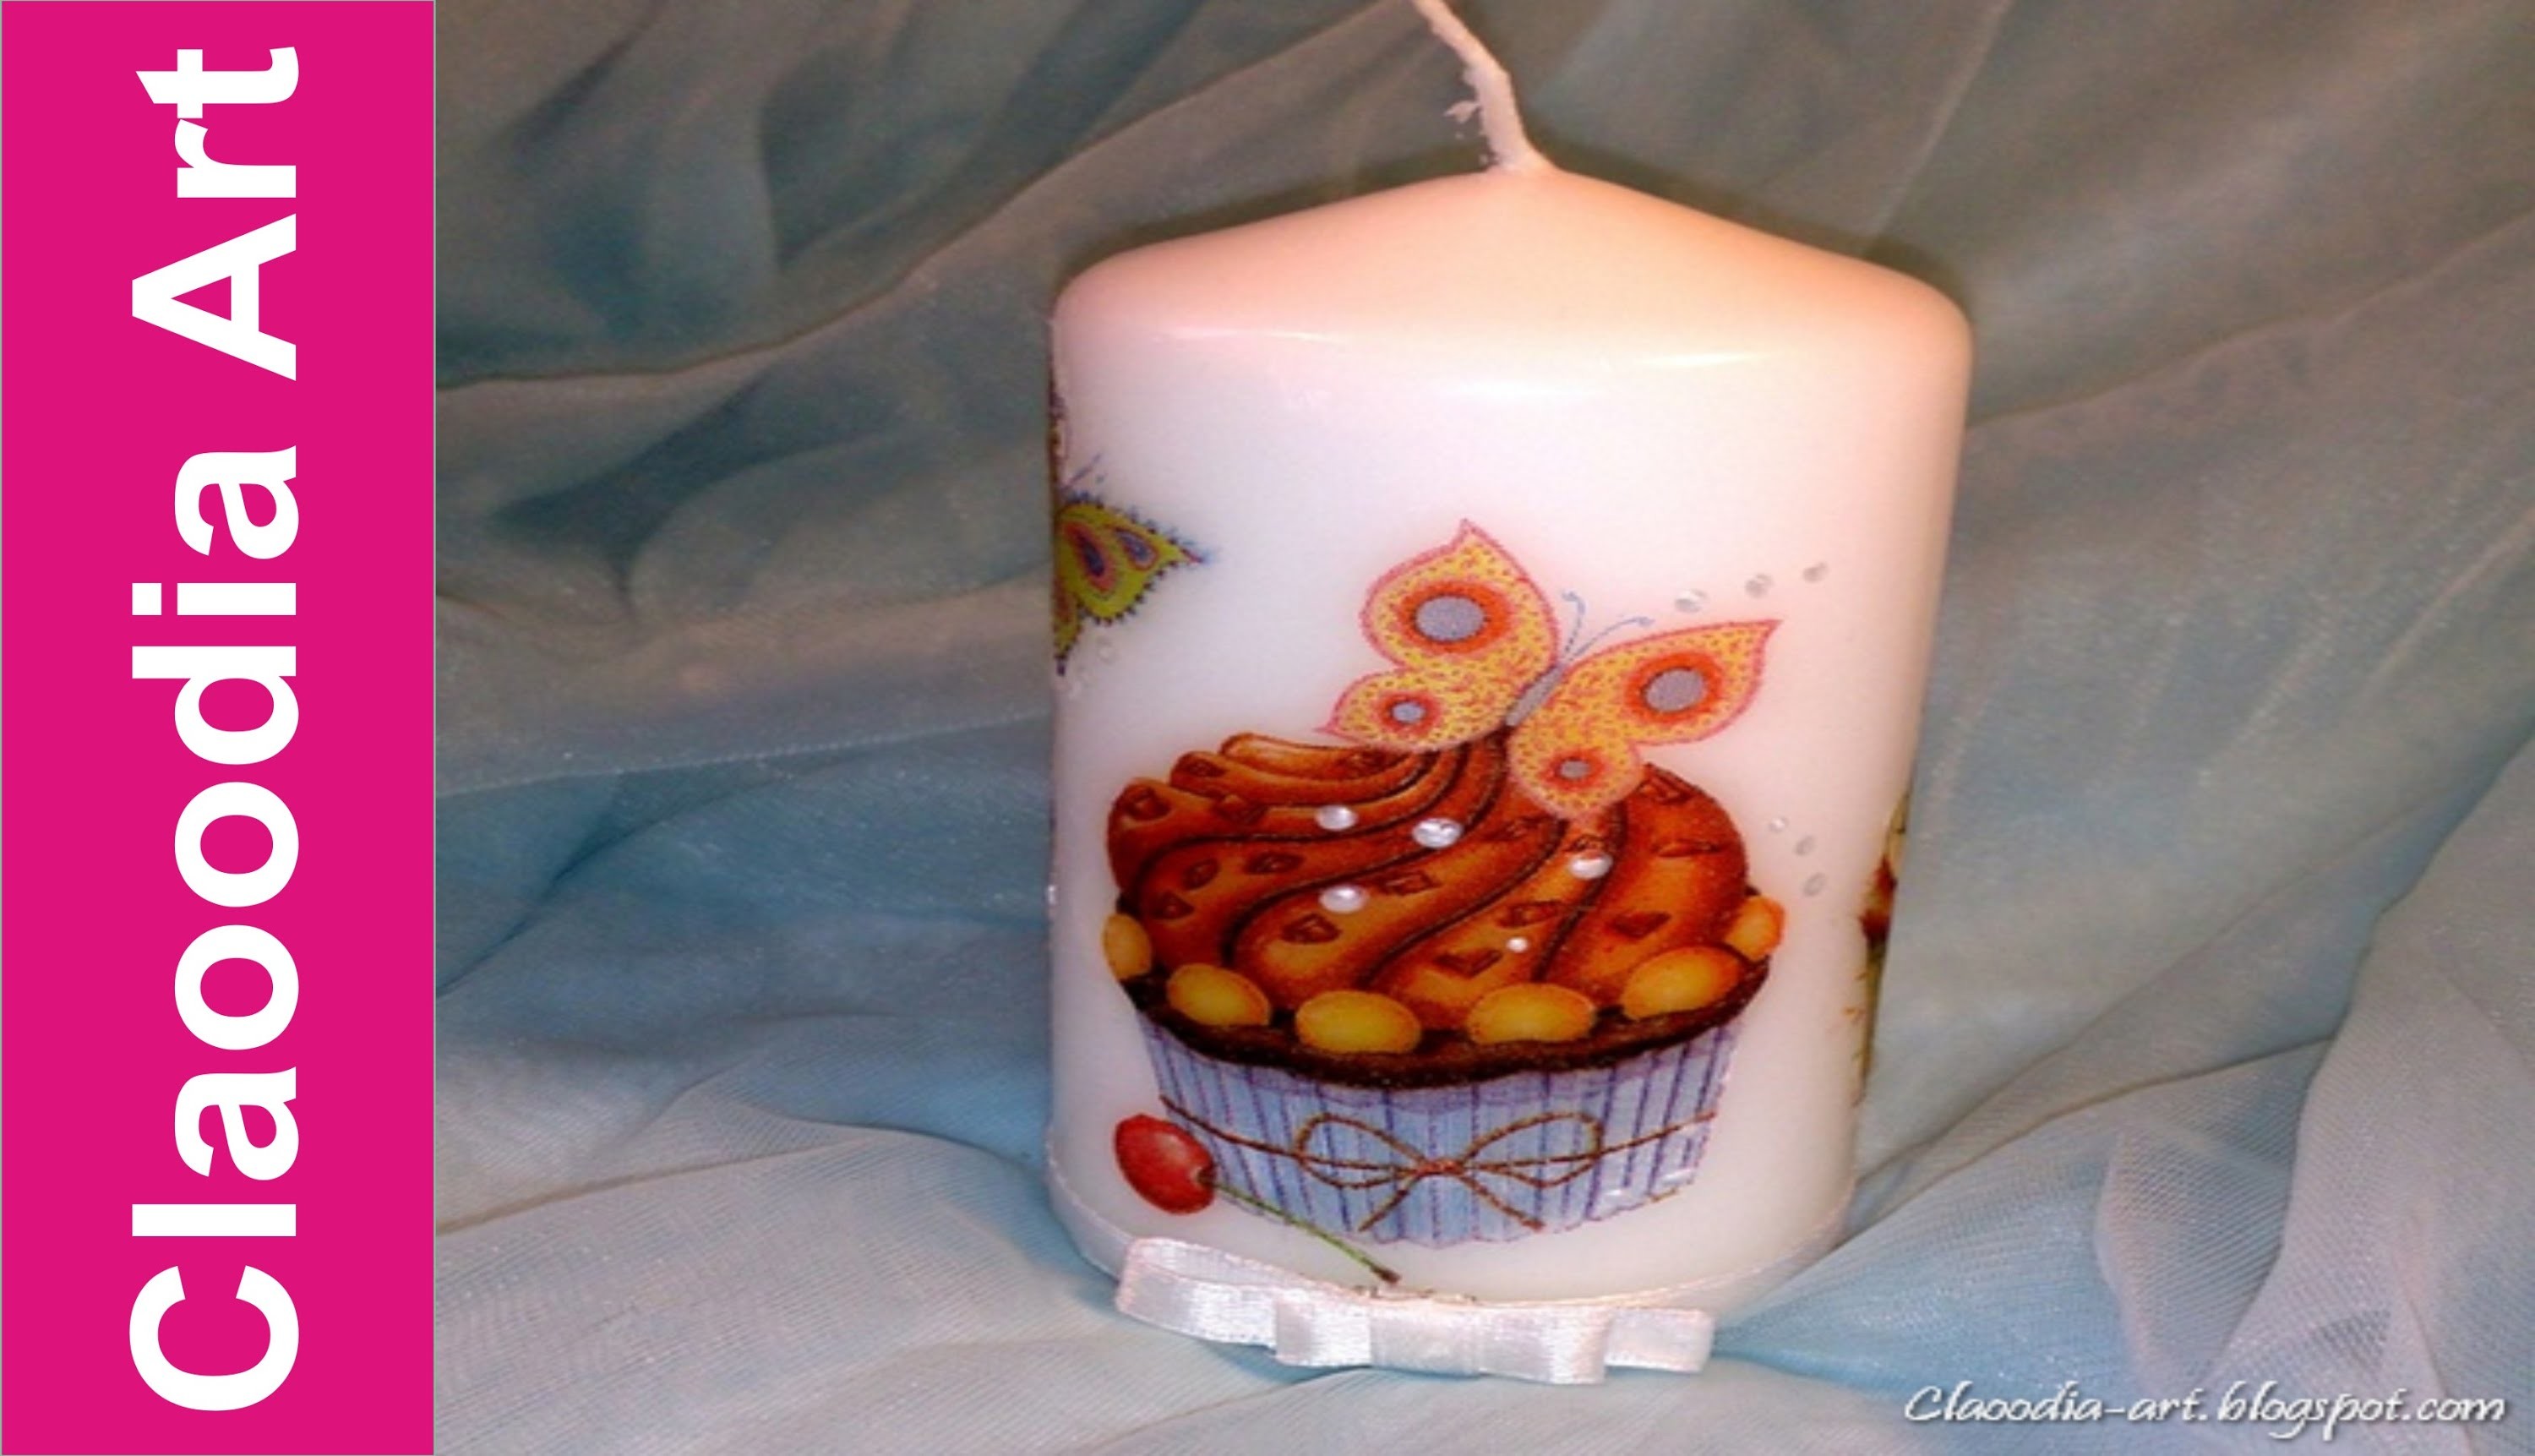 Ozdabianie świeczki, decoupage - z pomocą drugiej świeczki (candle decuopage)